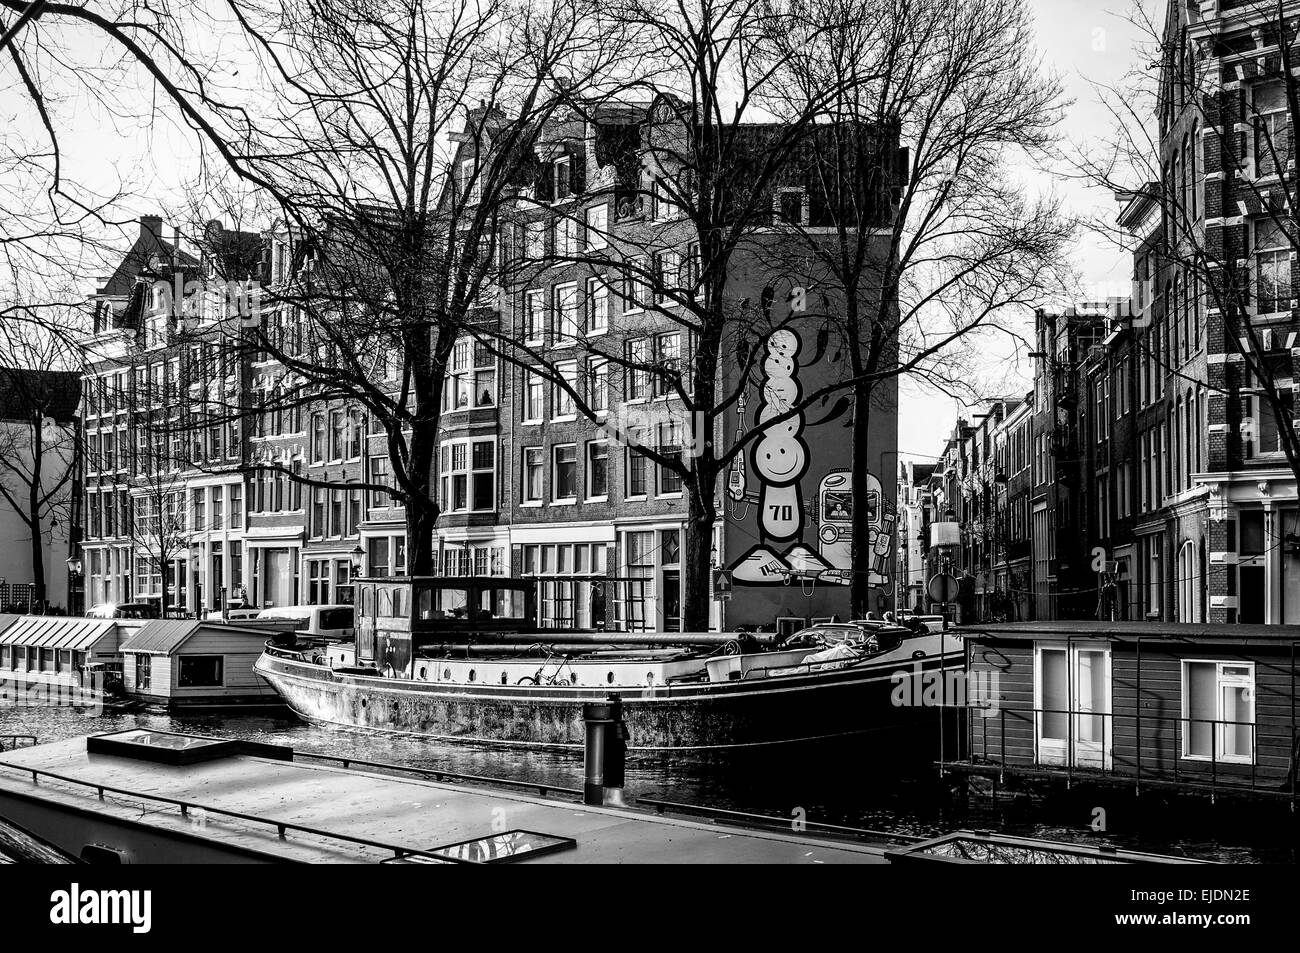 Kanalboote im Winter in Amsterdam. Schwarz und weiß. Stockfoto